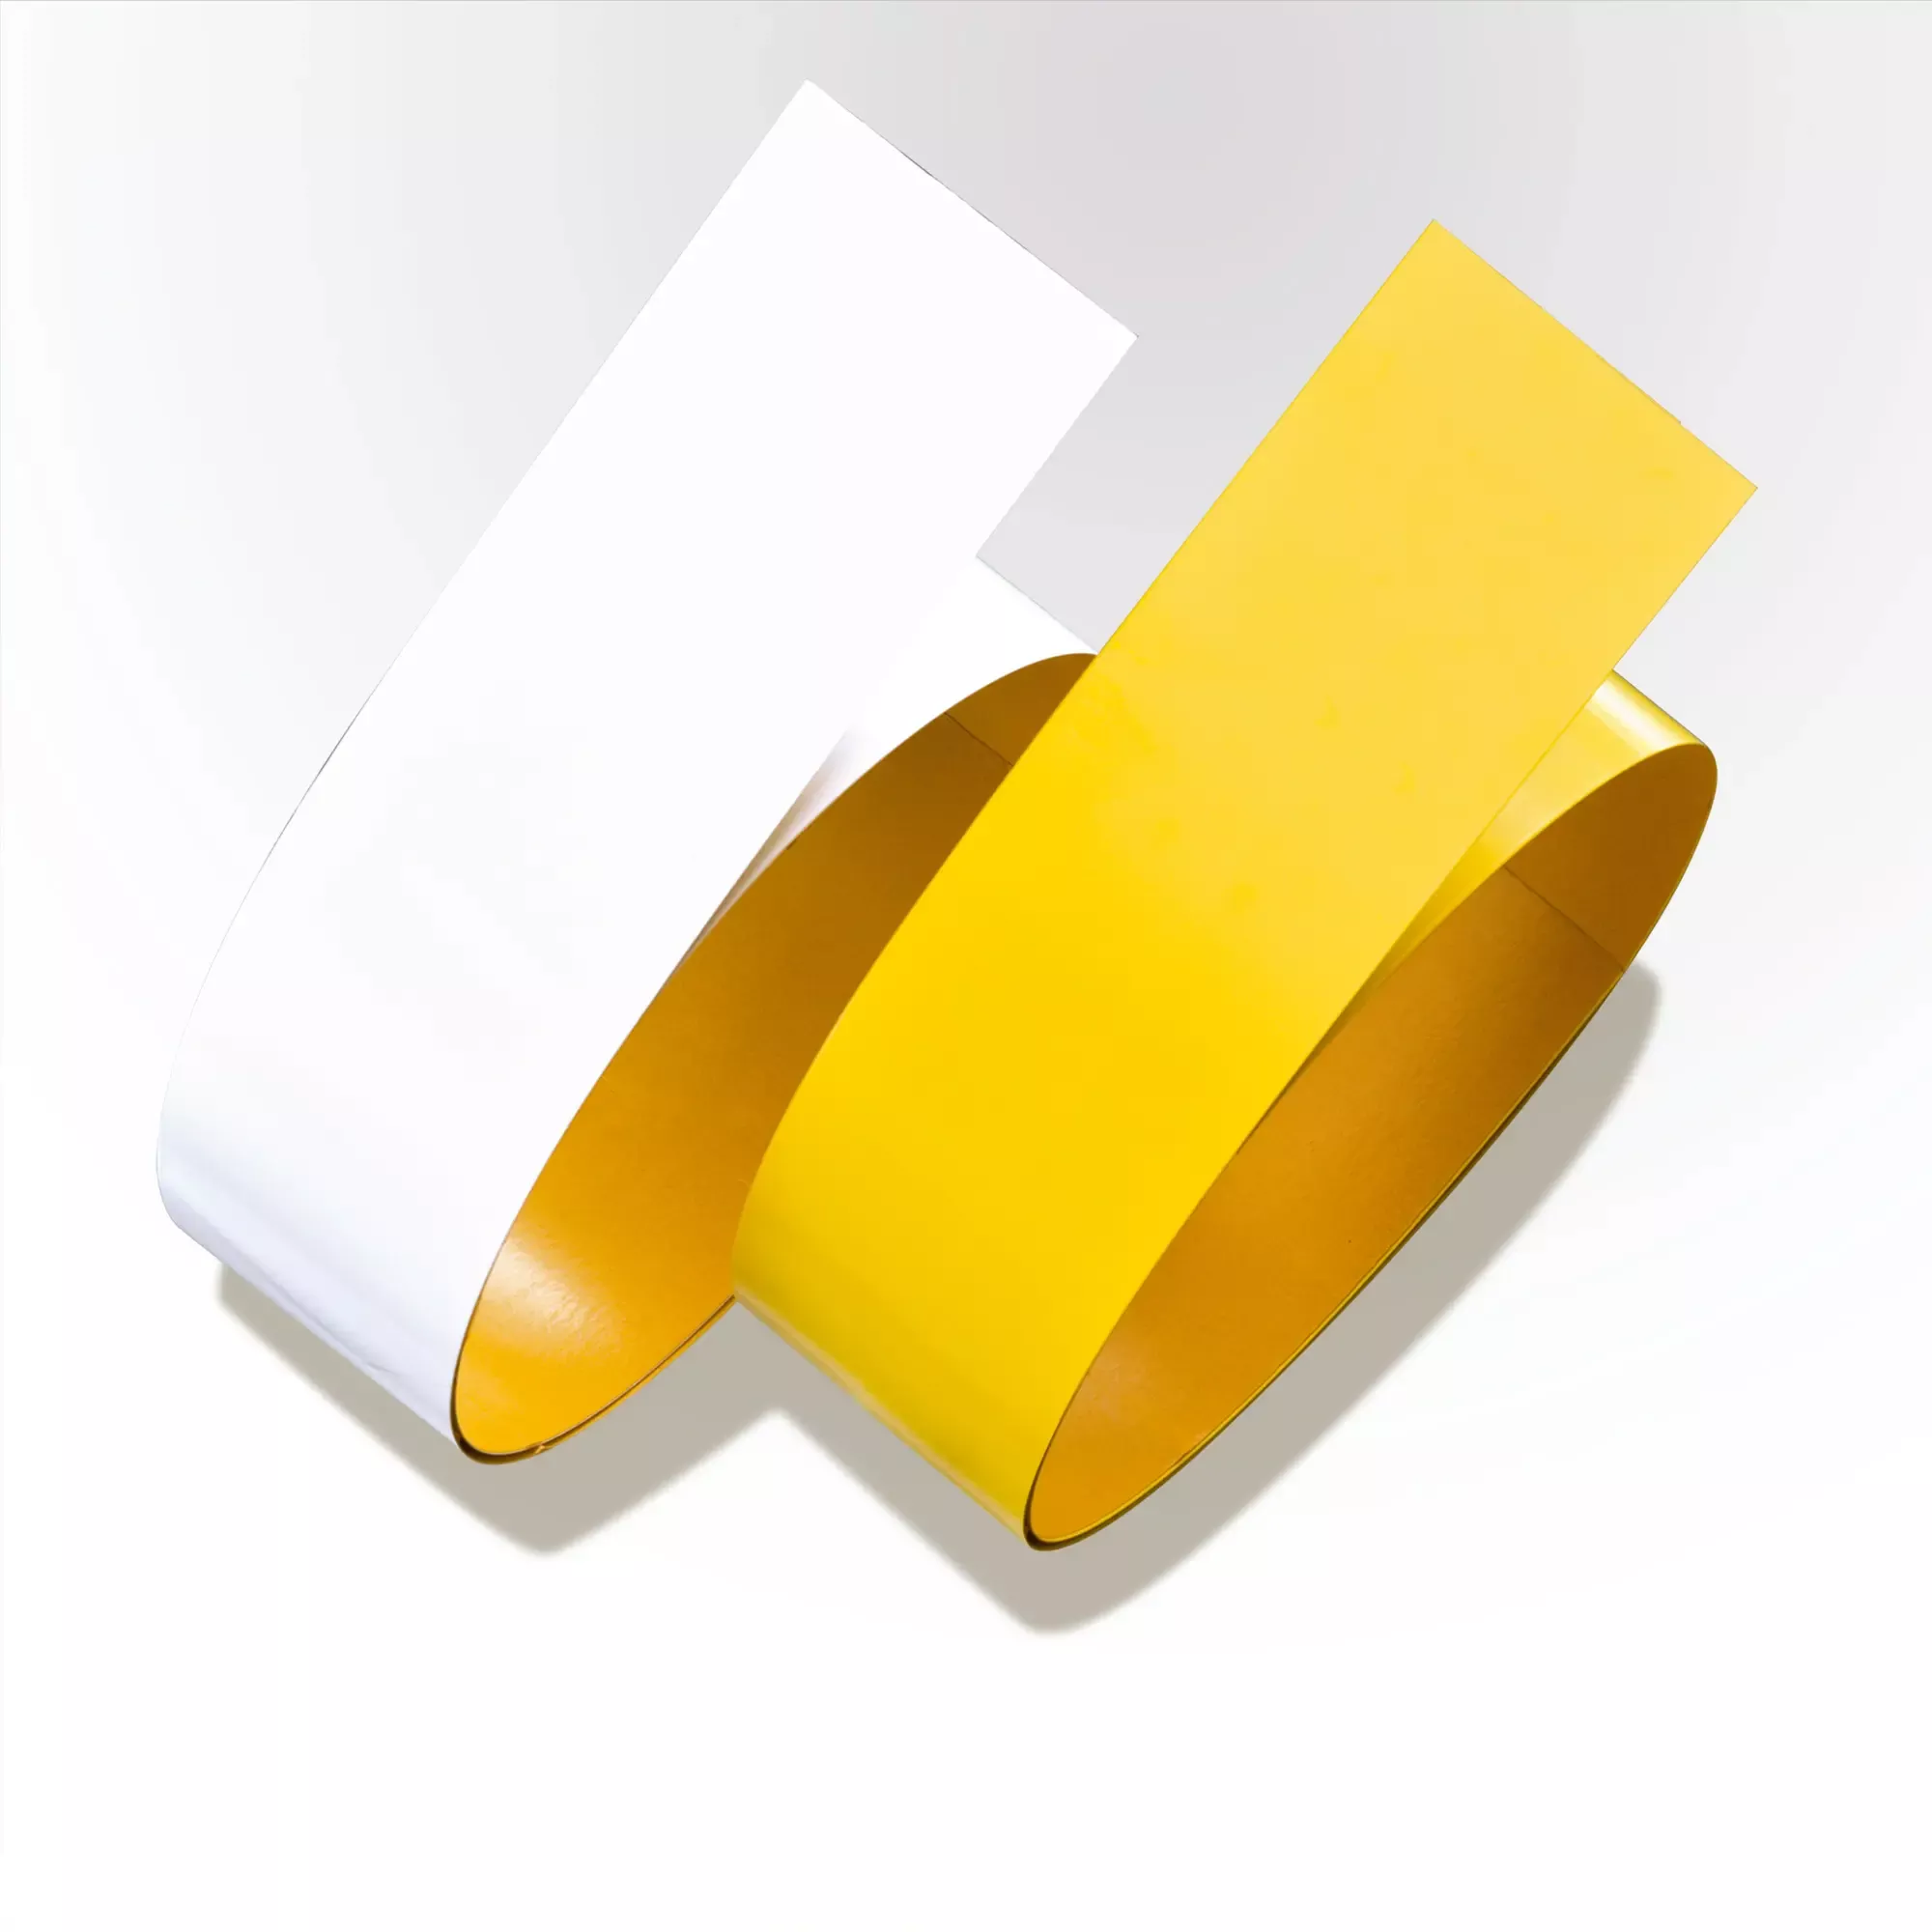 Stahl-Tape Proline, staplerfestes Bodenmarkierungsband, aus farbigem Flachstahl, selbstklebend, gelb, 75 mm x 1,5 m